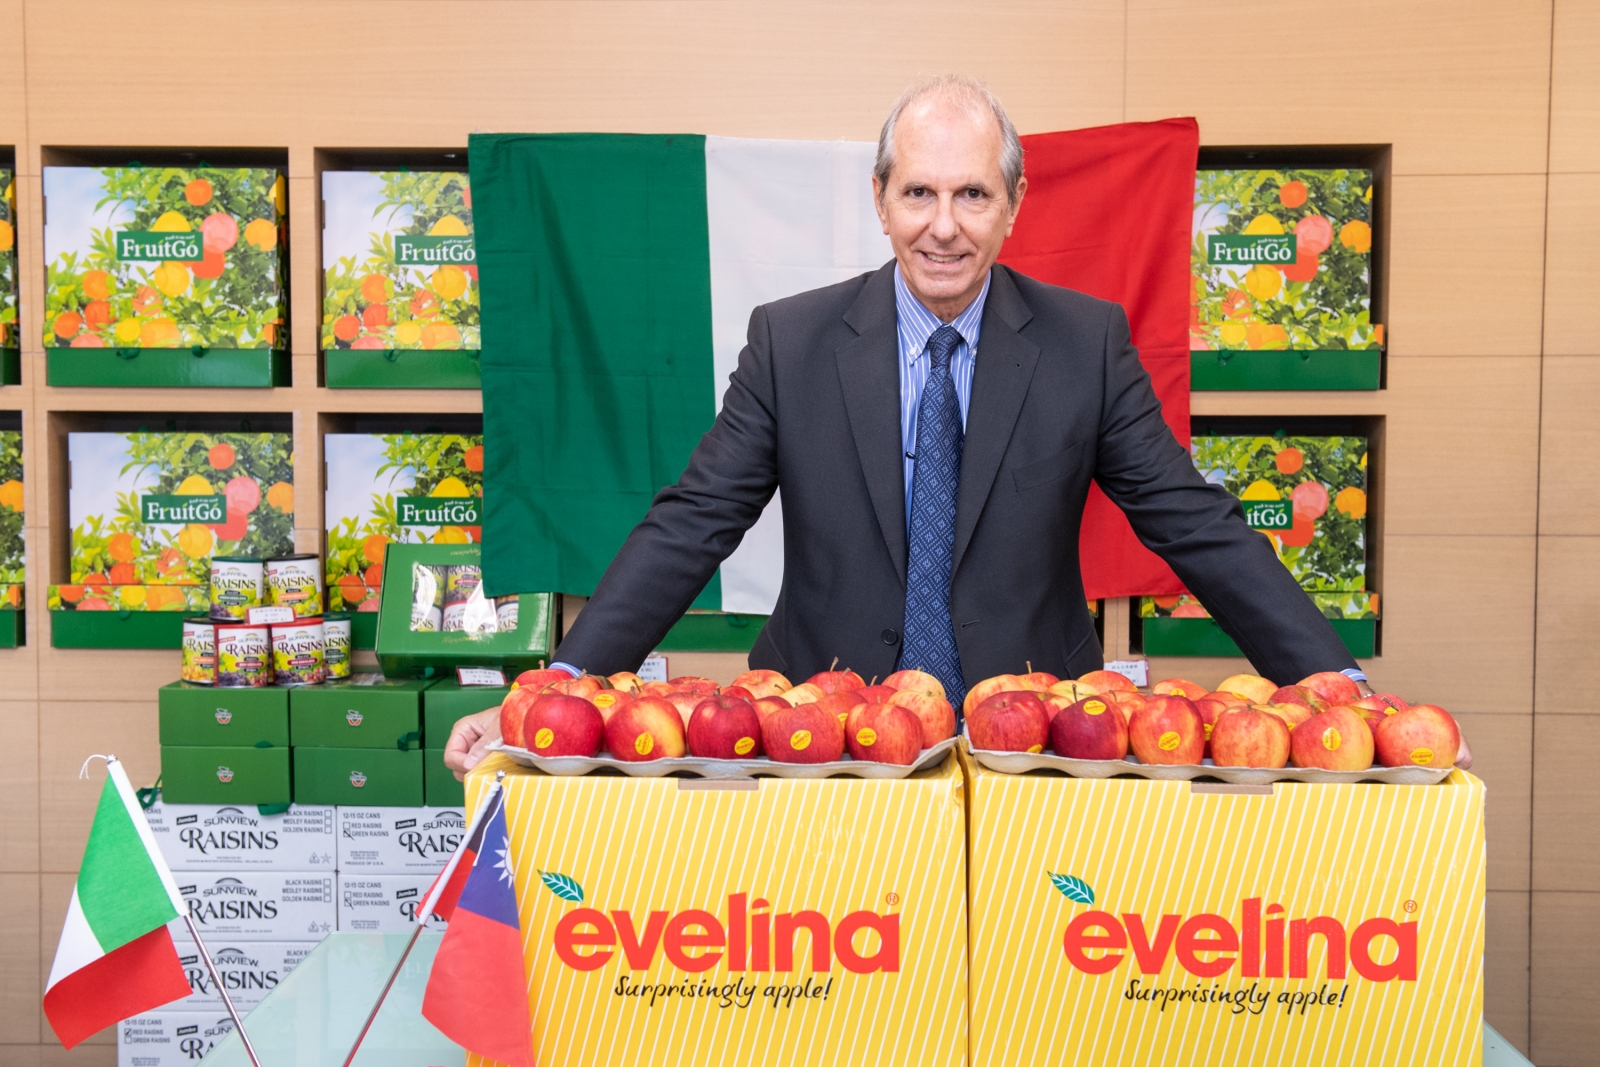 義大利經貿文化推廣辦事處台北貿易組主任夸特洛奇(Paolo Quattrocchi) 歡迎國人品嚐義大利蘋果的美味。